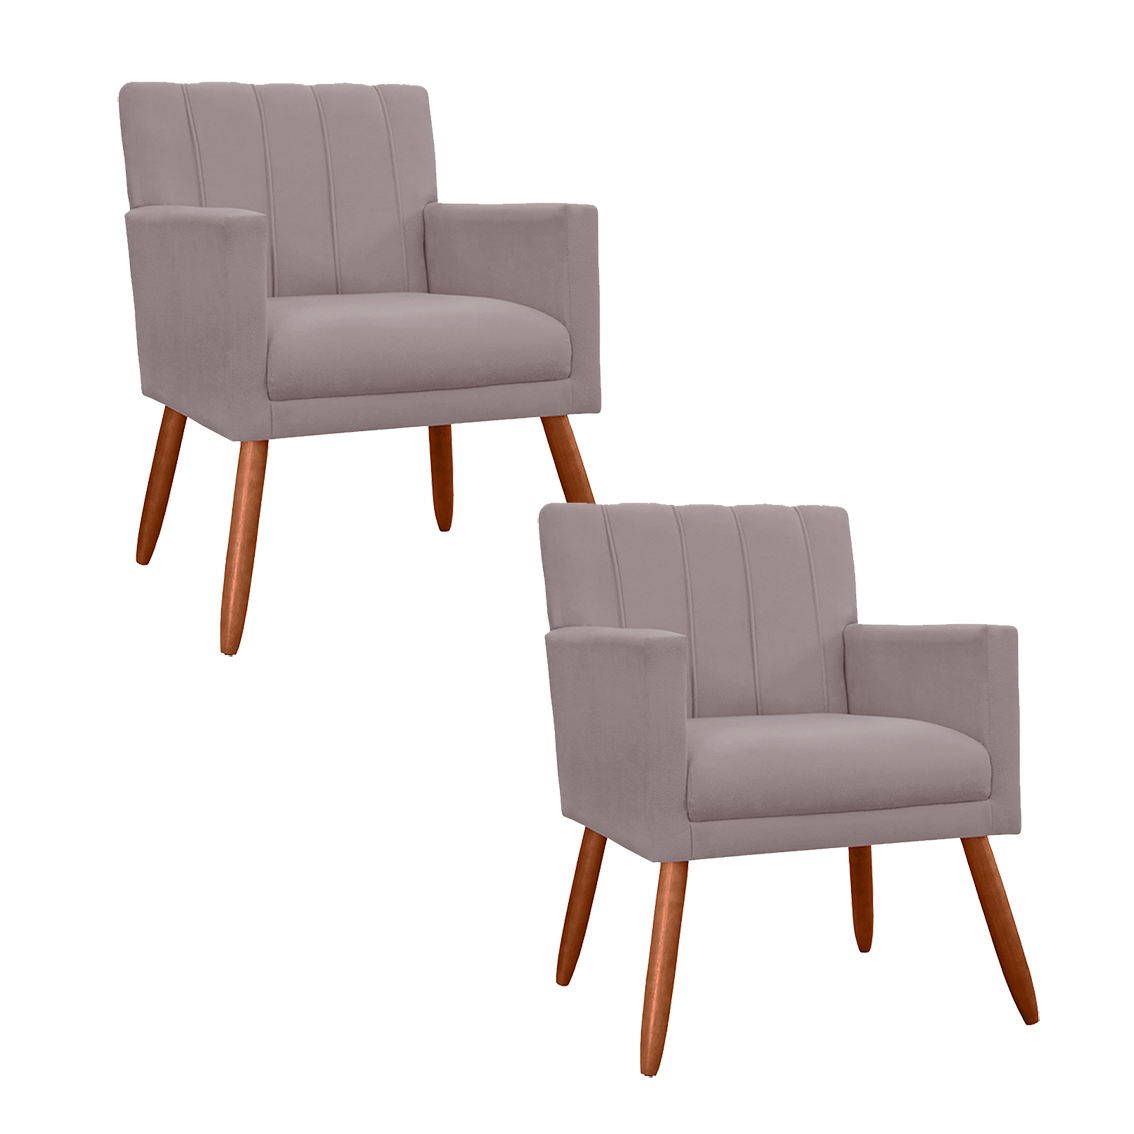 Kit 2 Poltronas Cadeiras Decorativa para Recepção Cecília Suede Rosê - Incasa Decor